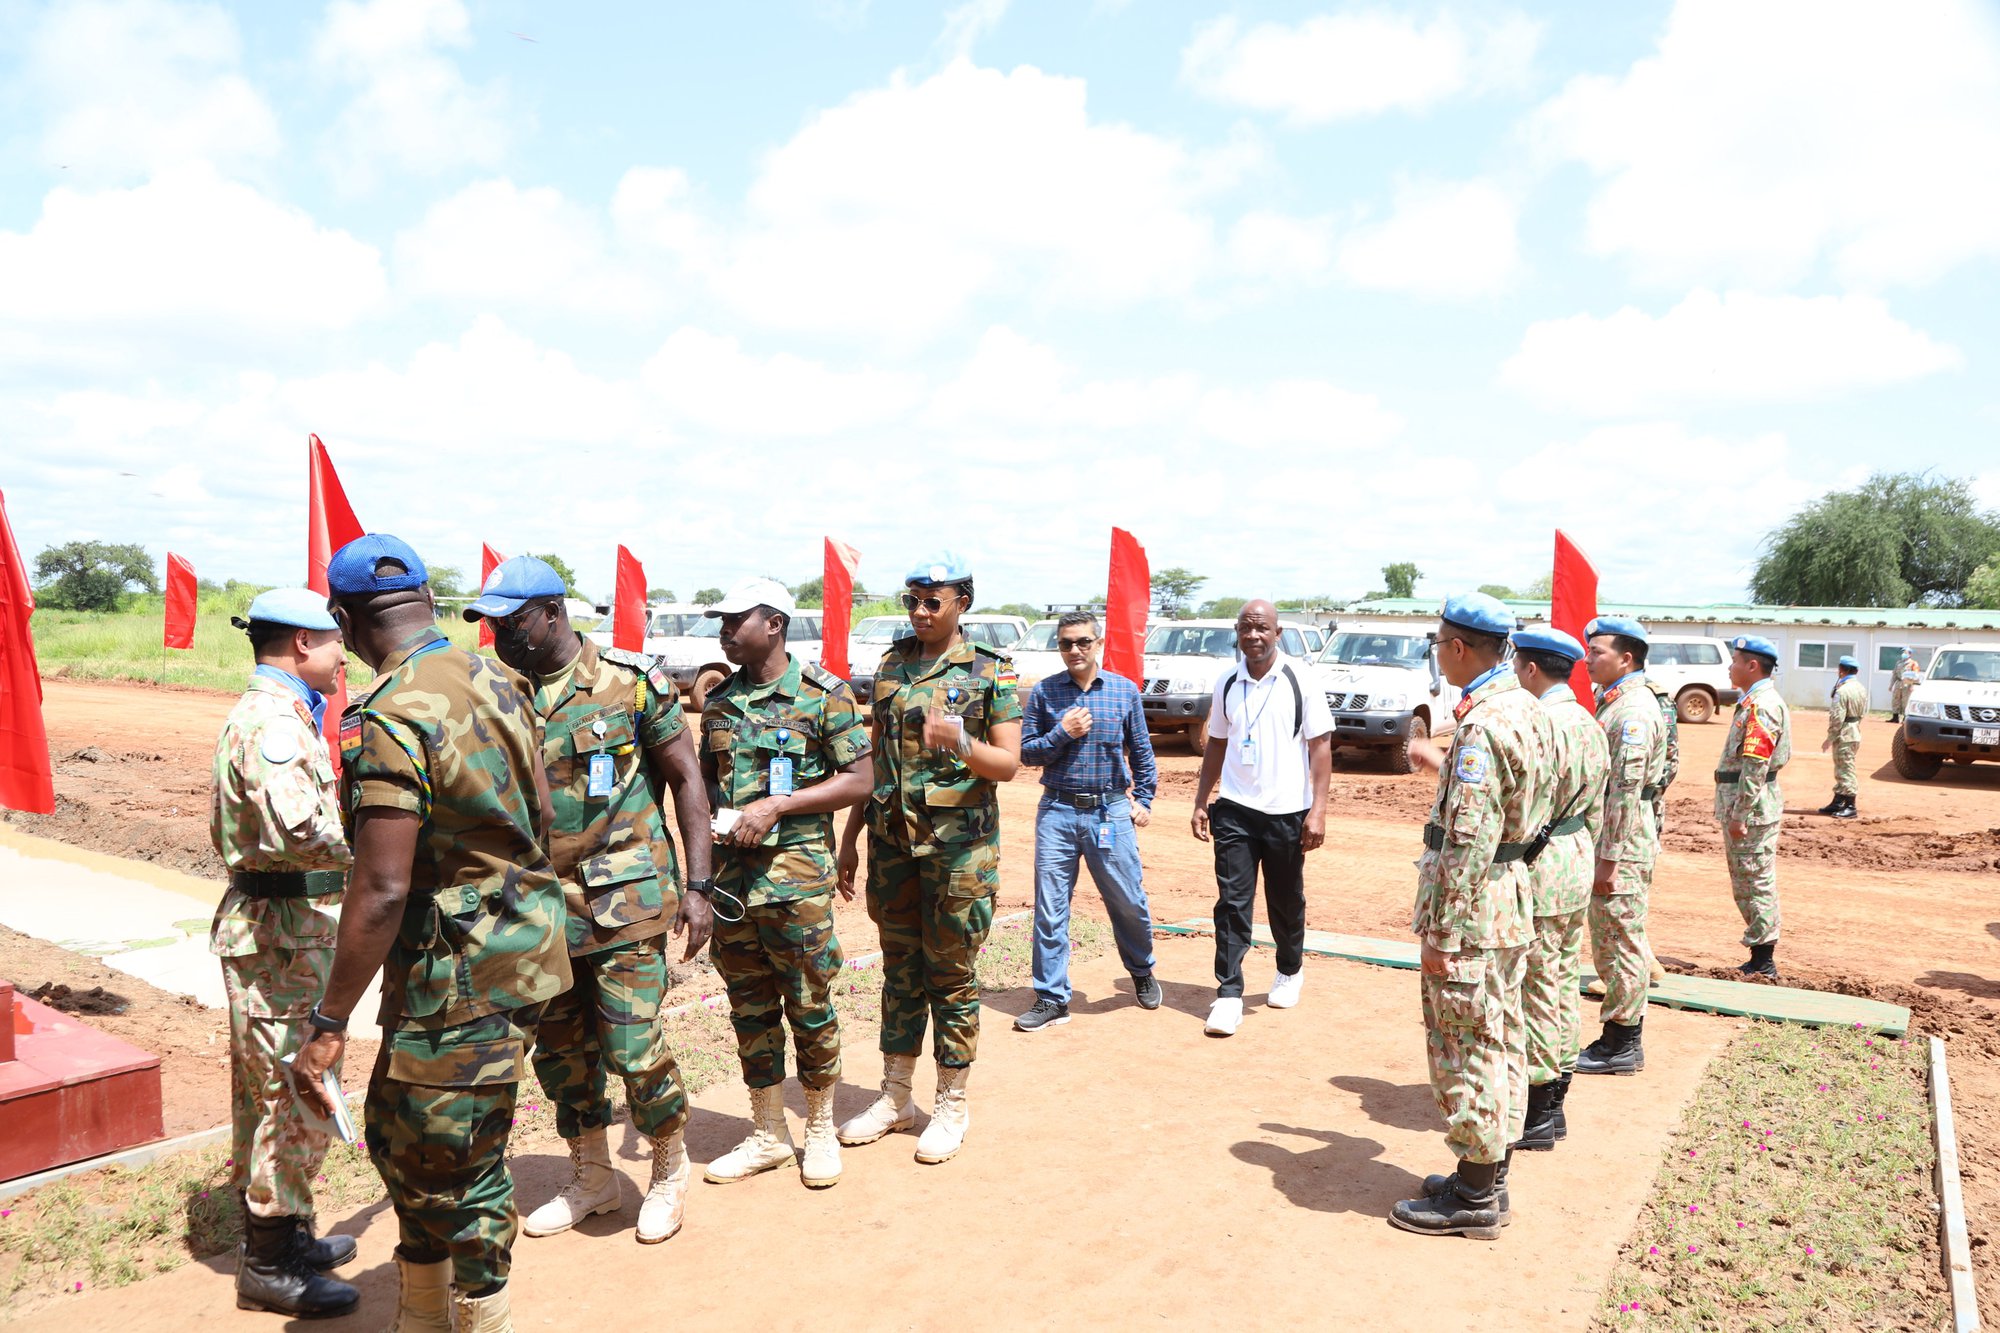 Cận cảnh lễ kỷ niệm Quốc khánh 2-9 tại phái bộ Gìn giữ hoà bình LHQ ở châu Phi - Ảnh 5.